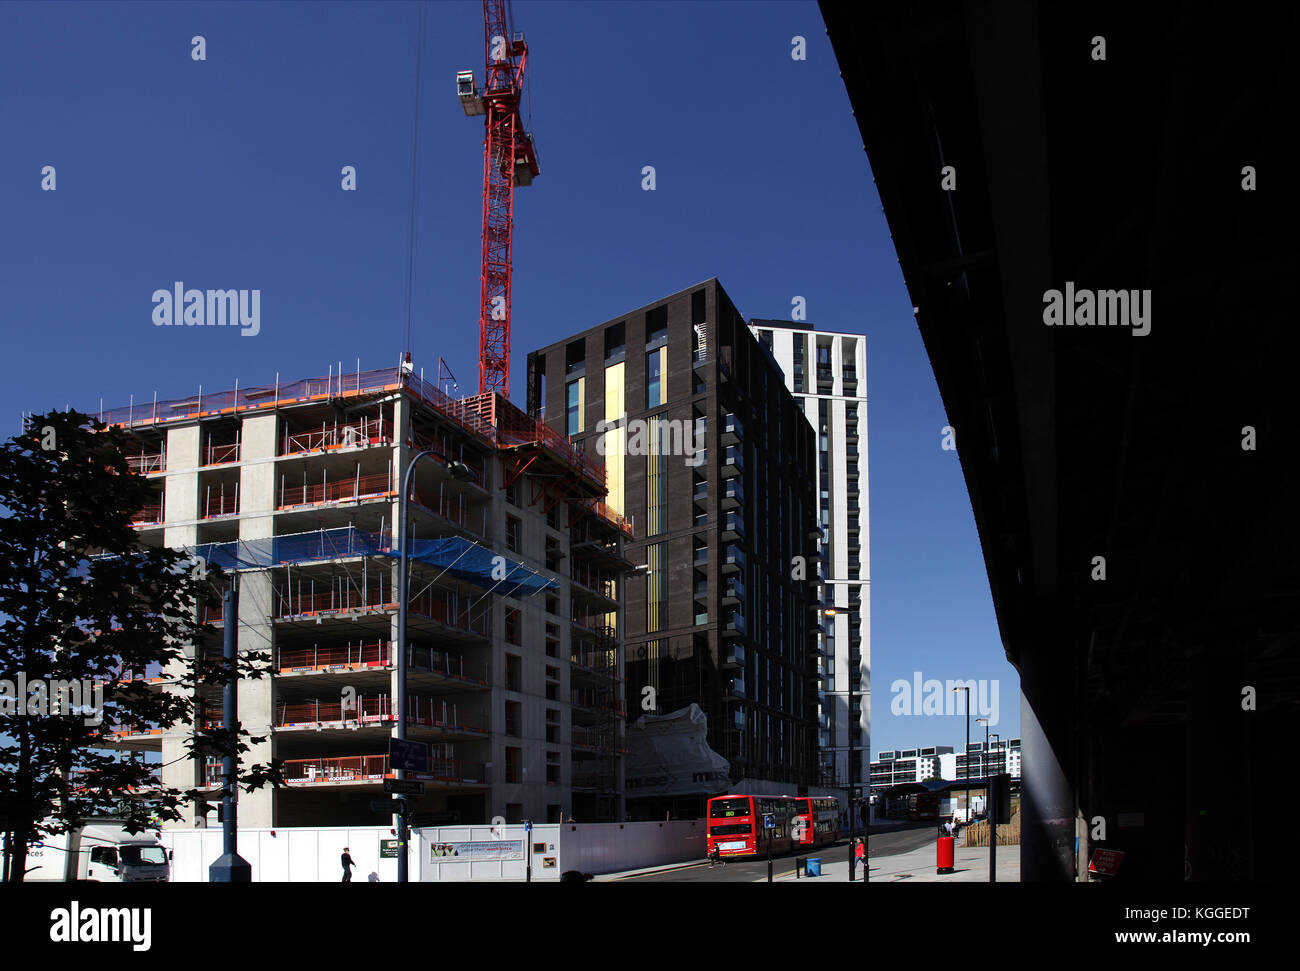 Lewisham Zentrum übersicht Sanierung im Jahr 2017. lewisham ist der größte Bereich der Abrechnung im Londoner Stadtteil Lewisham, London, Großbritannien Stockfoto